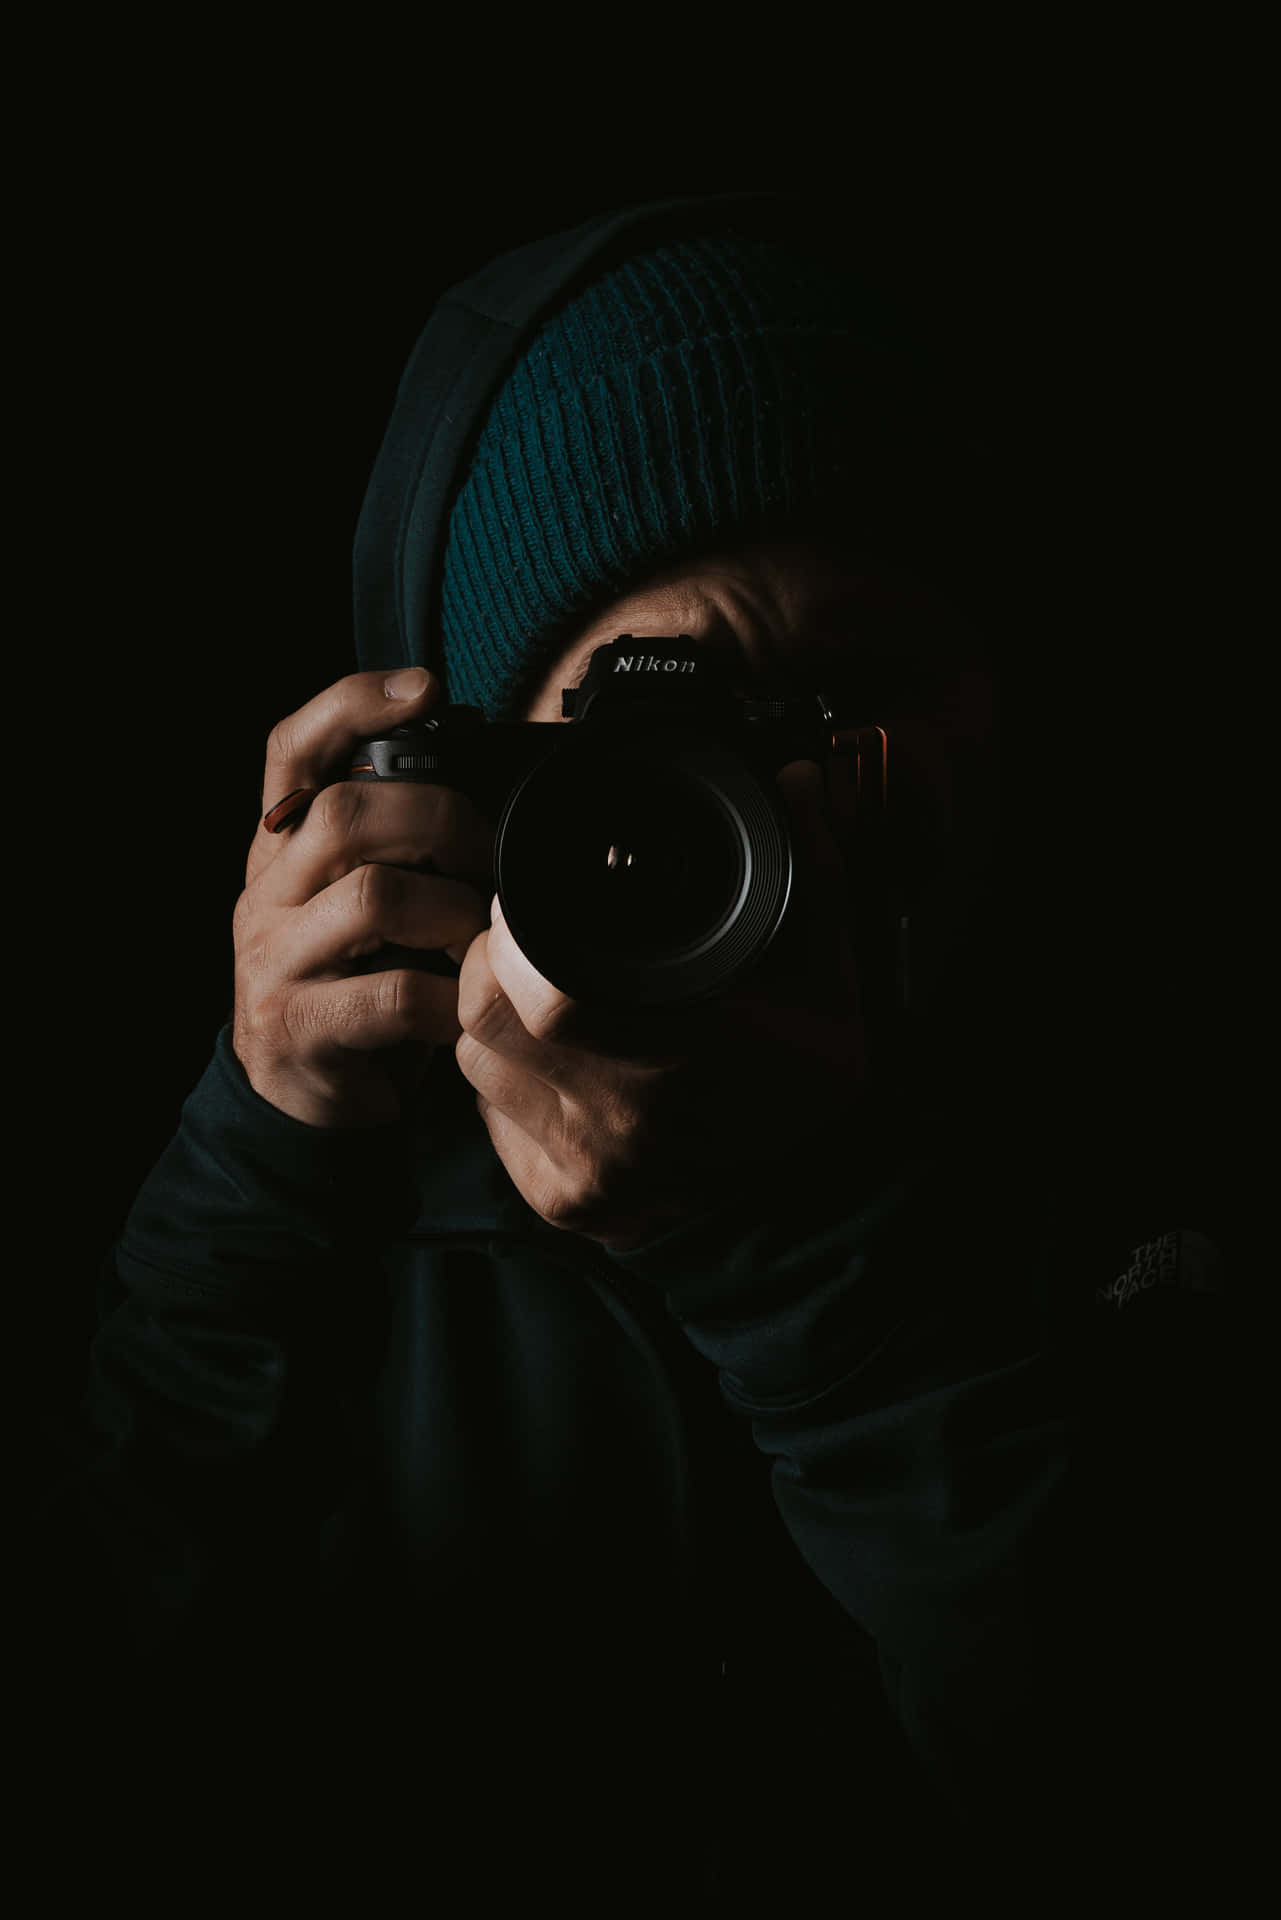 Captivating Dslr Camera On A Dark Blurred Background